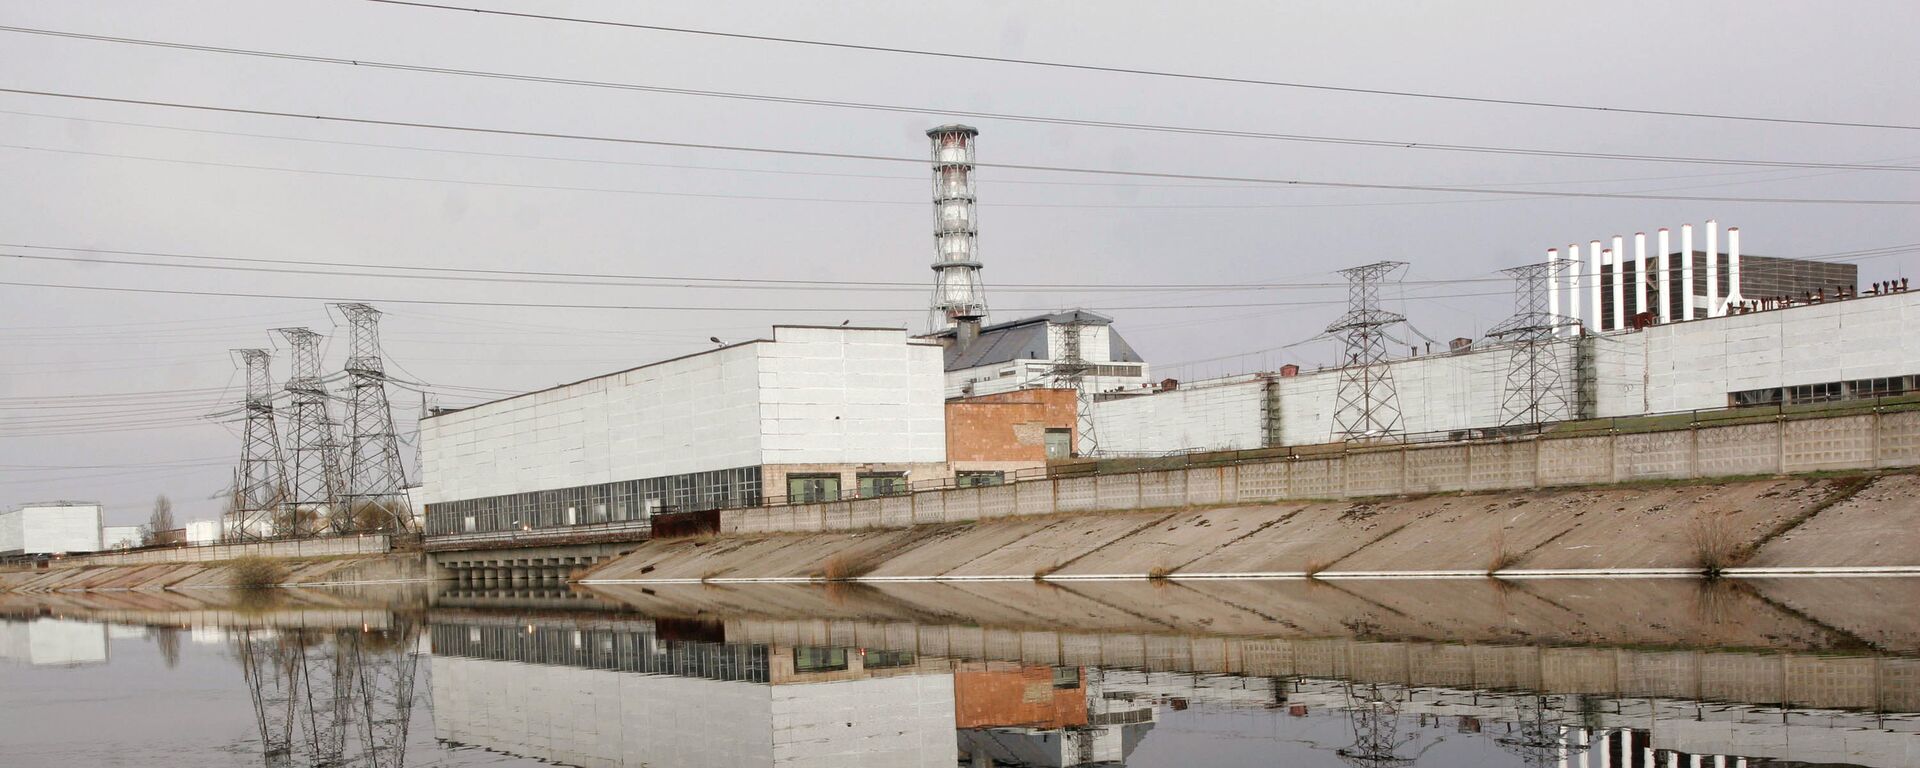 Nhà máy điện hạt nhân Chernobyl - Sputnik Việt Nam, 1920, 10.03.2022